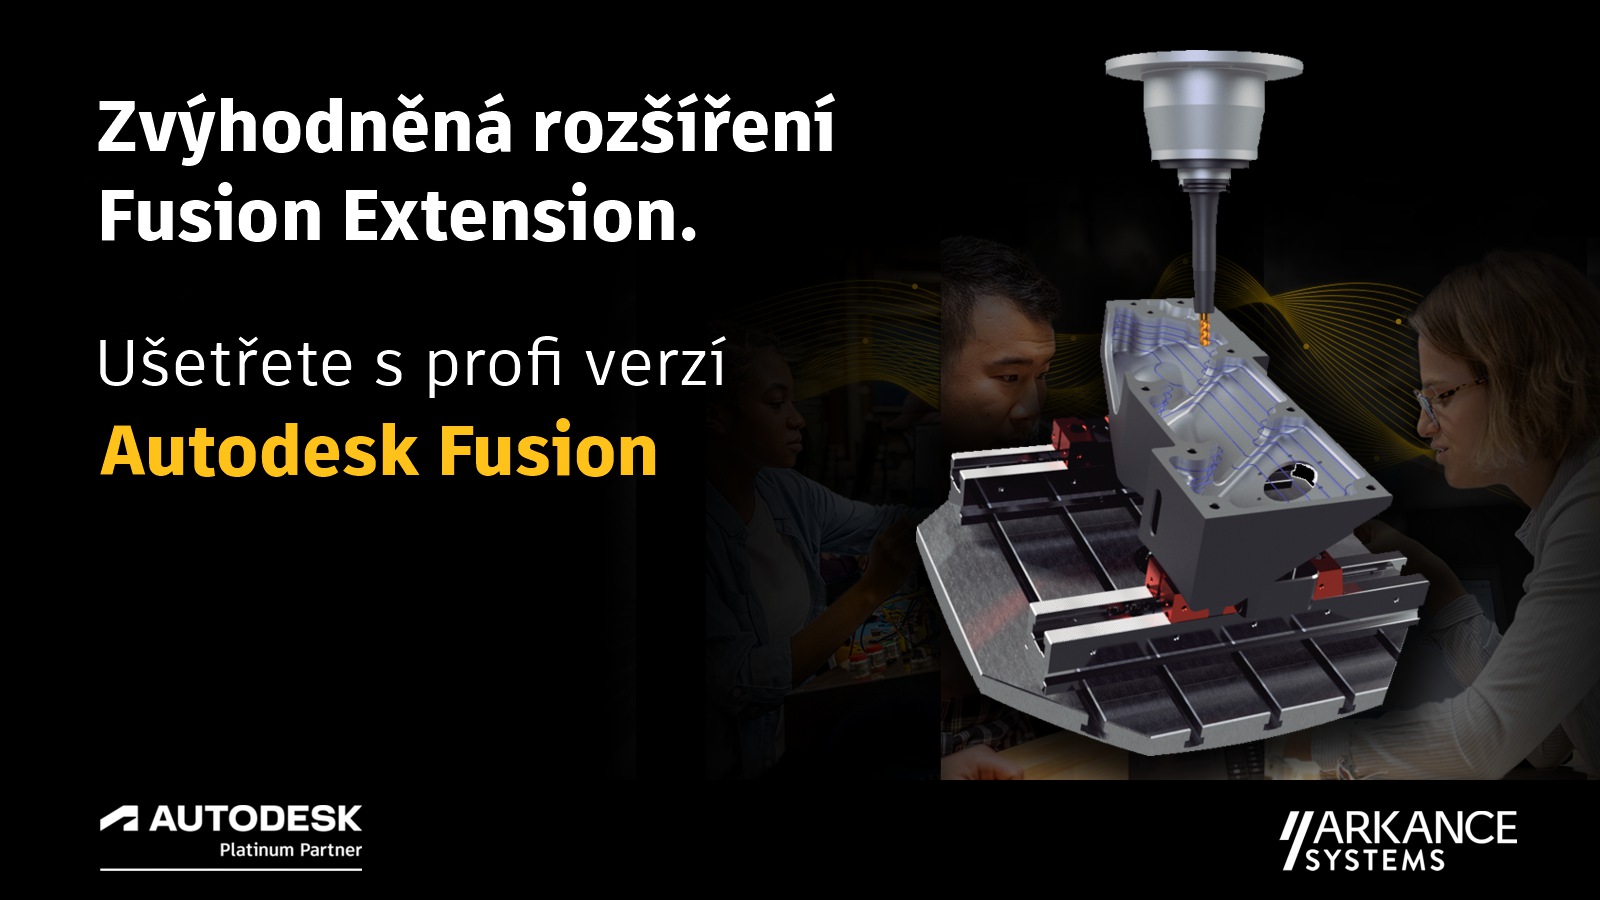 Fusion 360 Extensions - zvýhodněná rozšíření